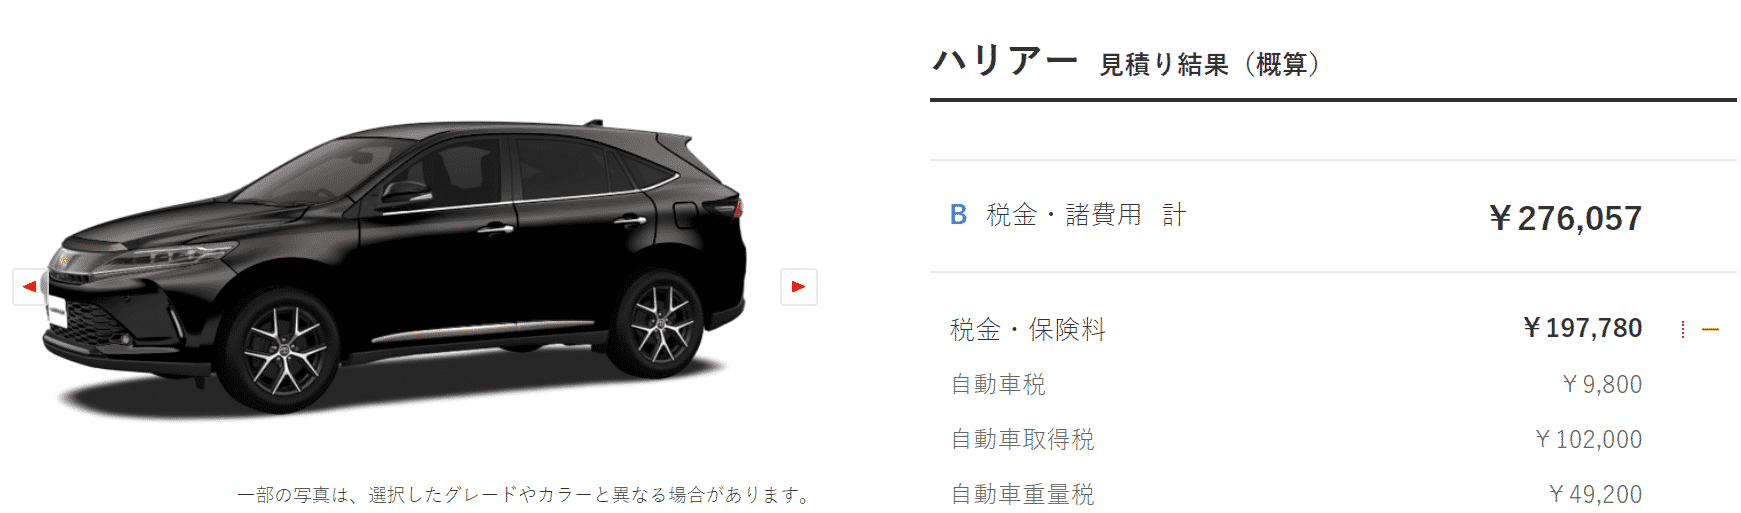 「特別仕様車 PROGRESS “Style BLUEISH”」ターボ車の税額画像